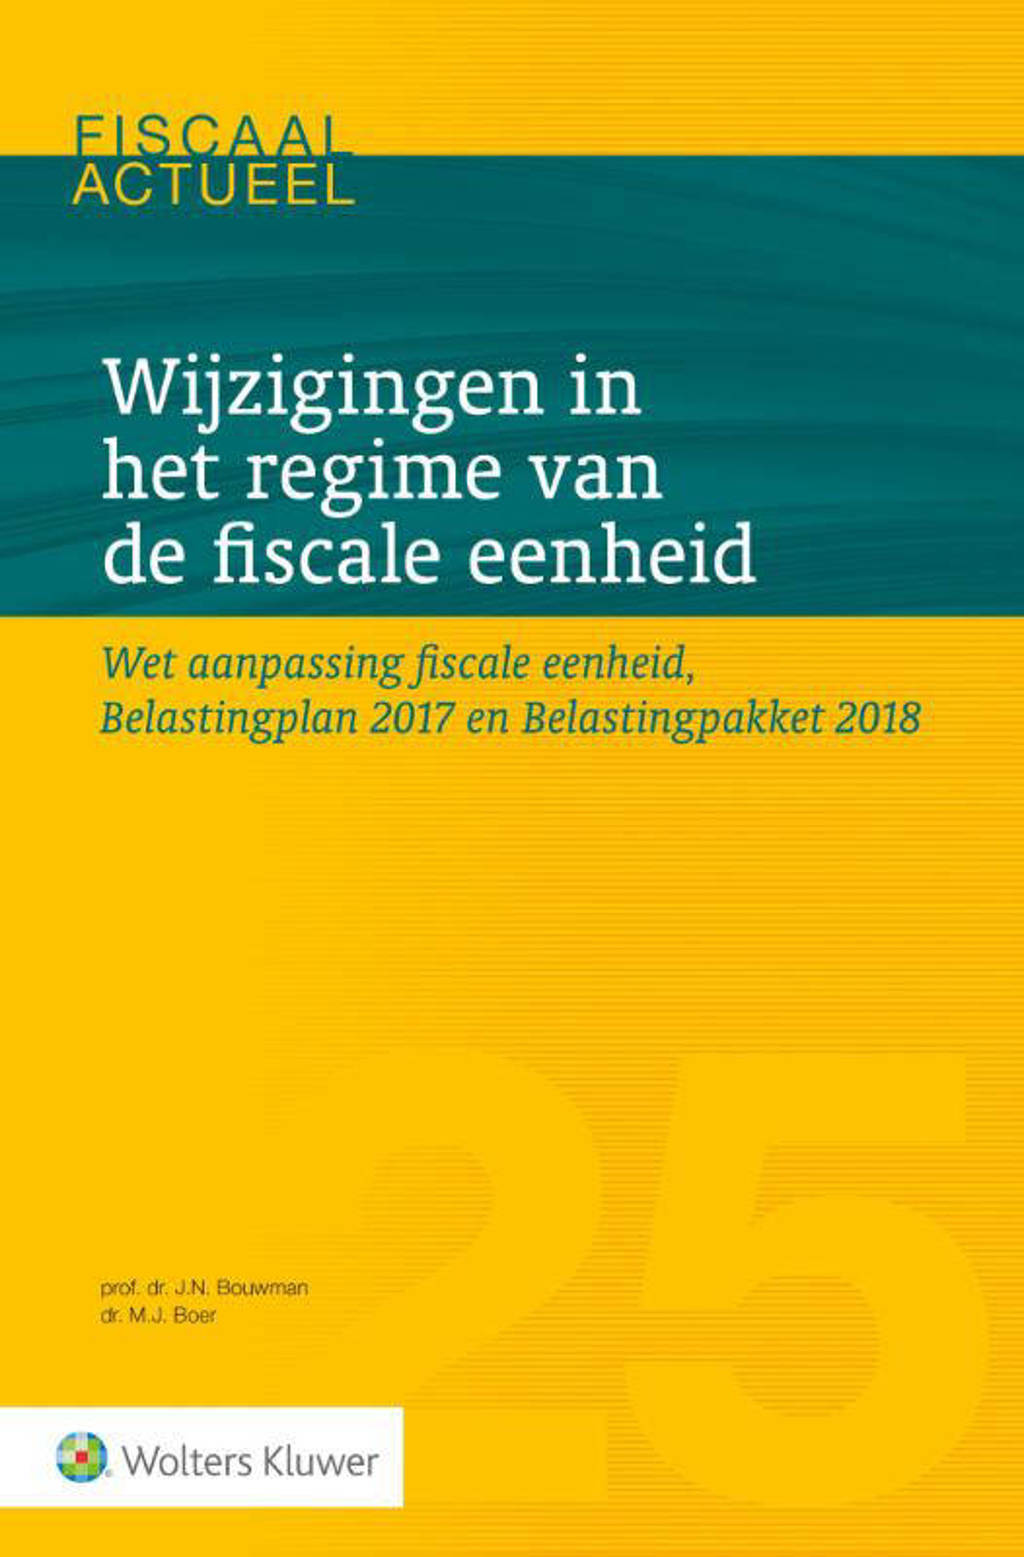 Fiscaal actueel: Wijzigingen in het regime van de fiscale eenheid - J.N. Bouwman en M.J. de Boer